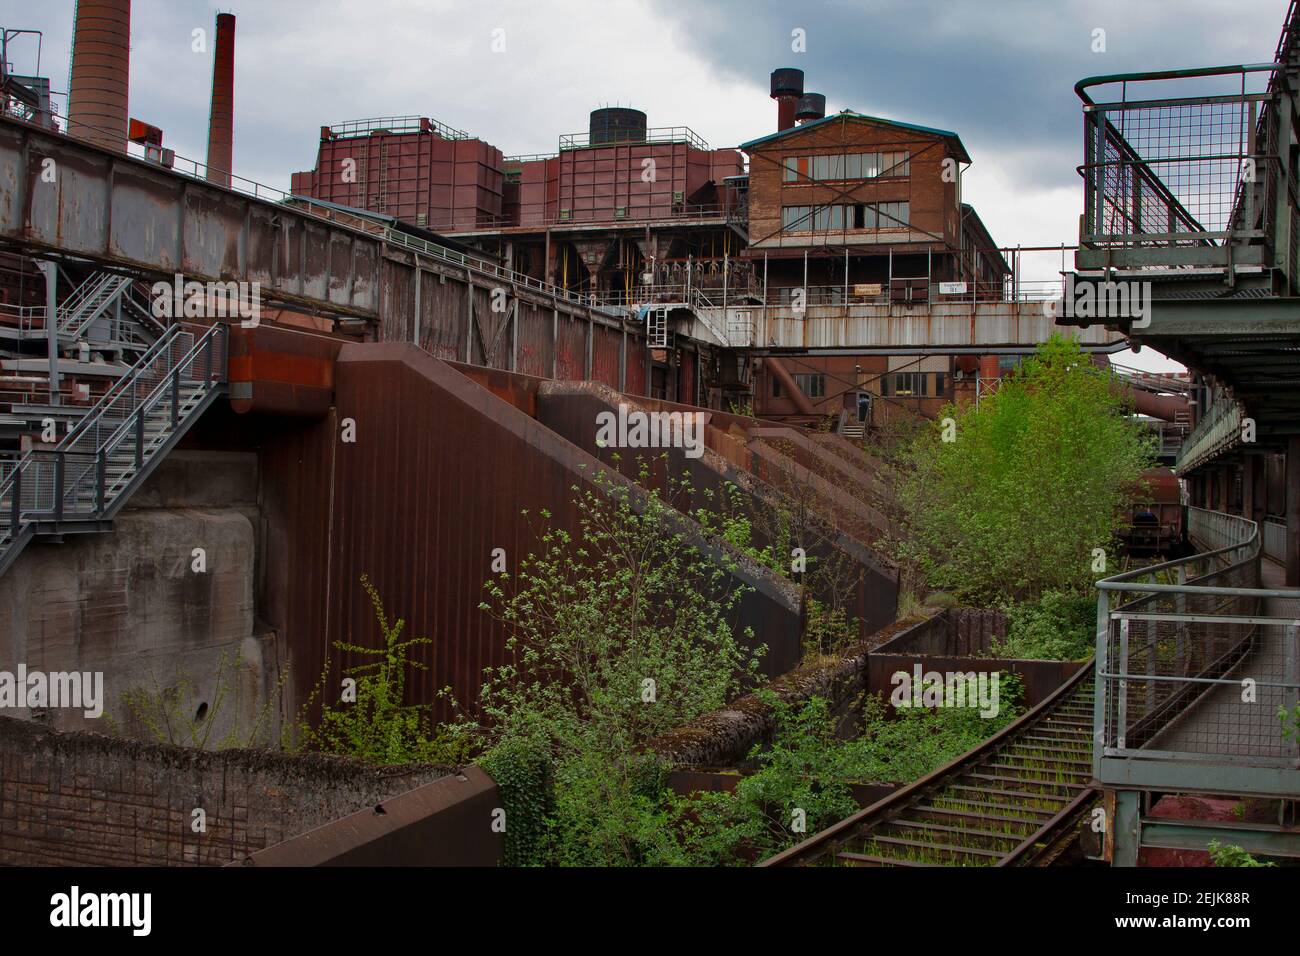 The Volklingen Iron Works are located in Saarbrucken in the Saar region of Germany, Stock Photo